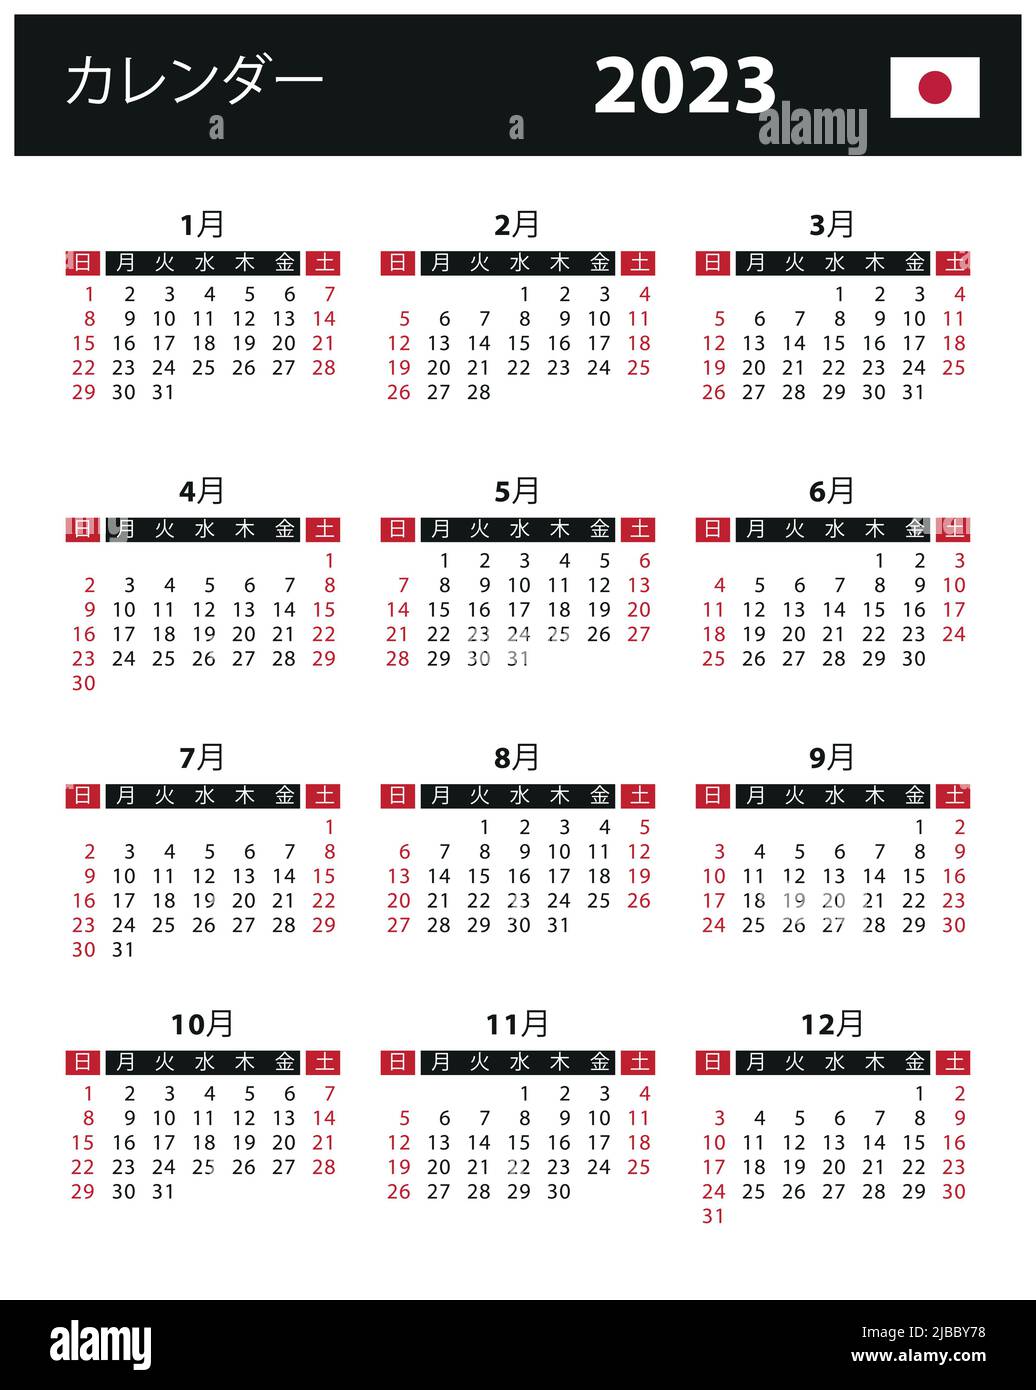 Magic Calendar, il calendario a inchiostro elettronico che si